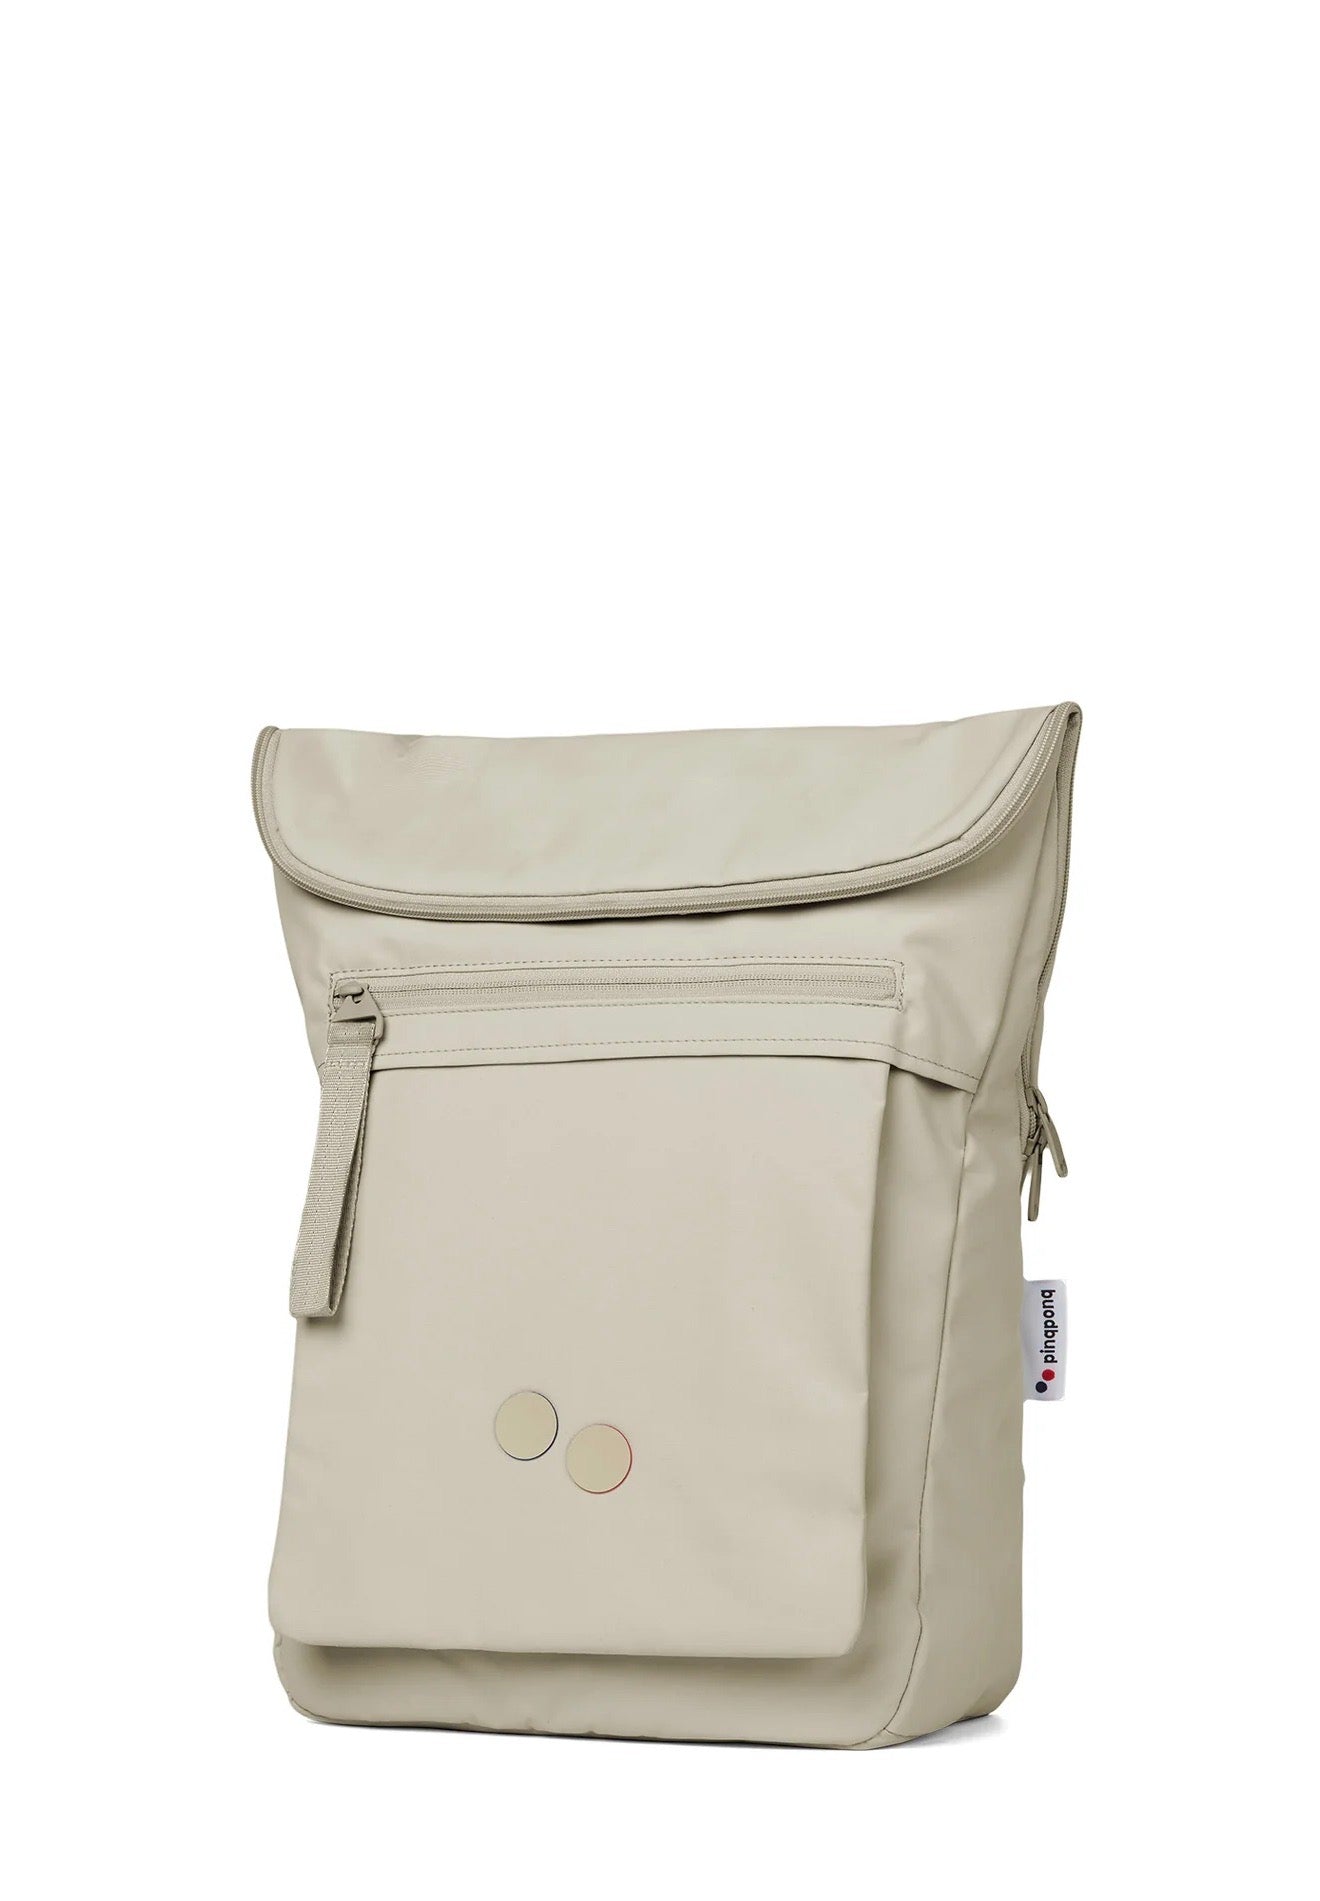 backpack klak reed olive